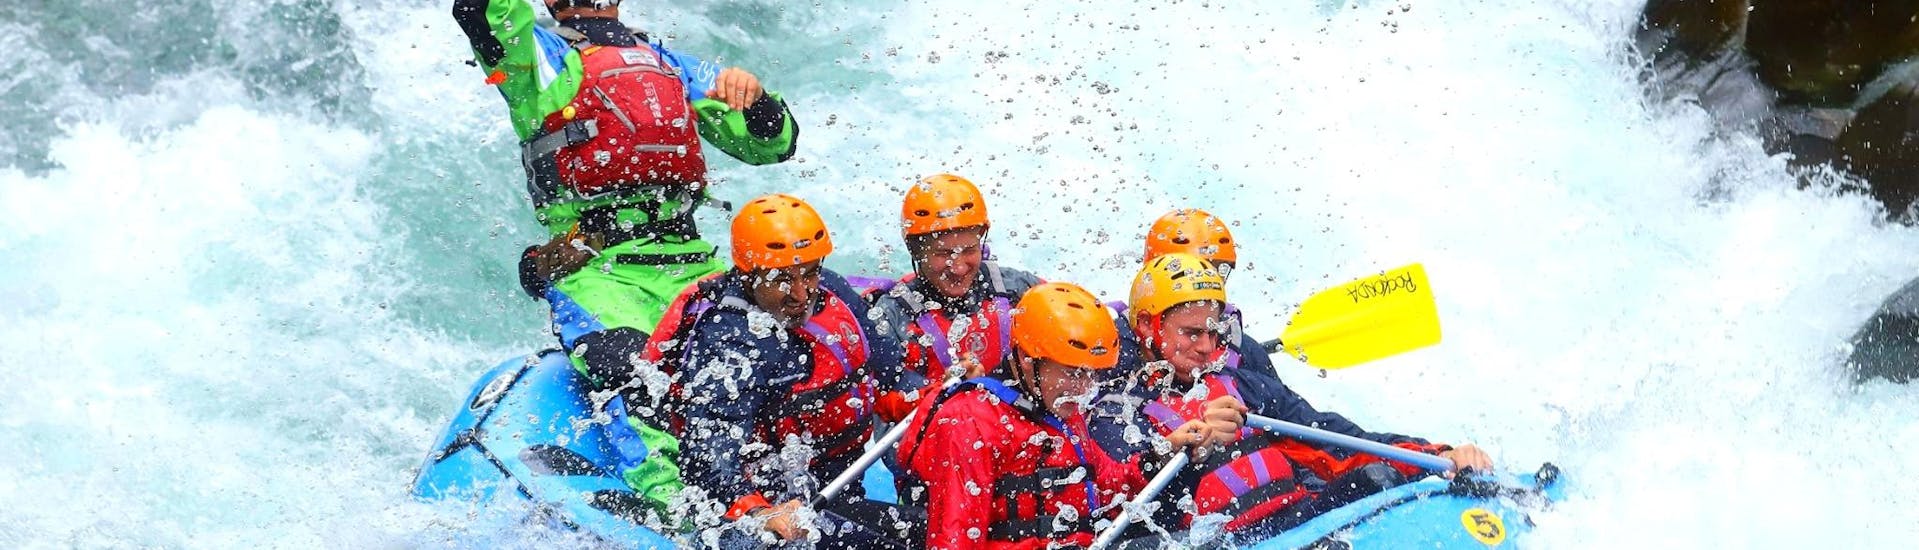 Un groupe de personnes sur le radeau affronte les eaux troubles de la rivière Lima pendant le Rafting sur la Lima - Exciting rganisé par Rockonda.